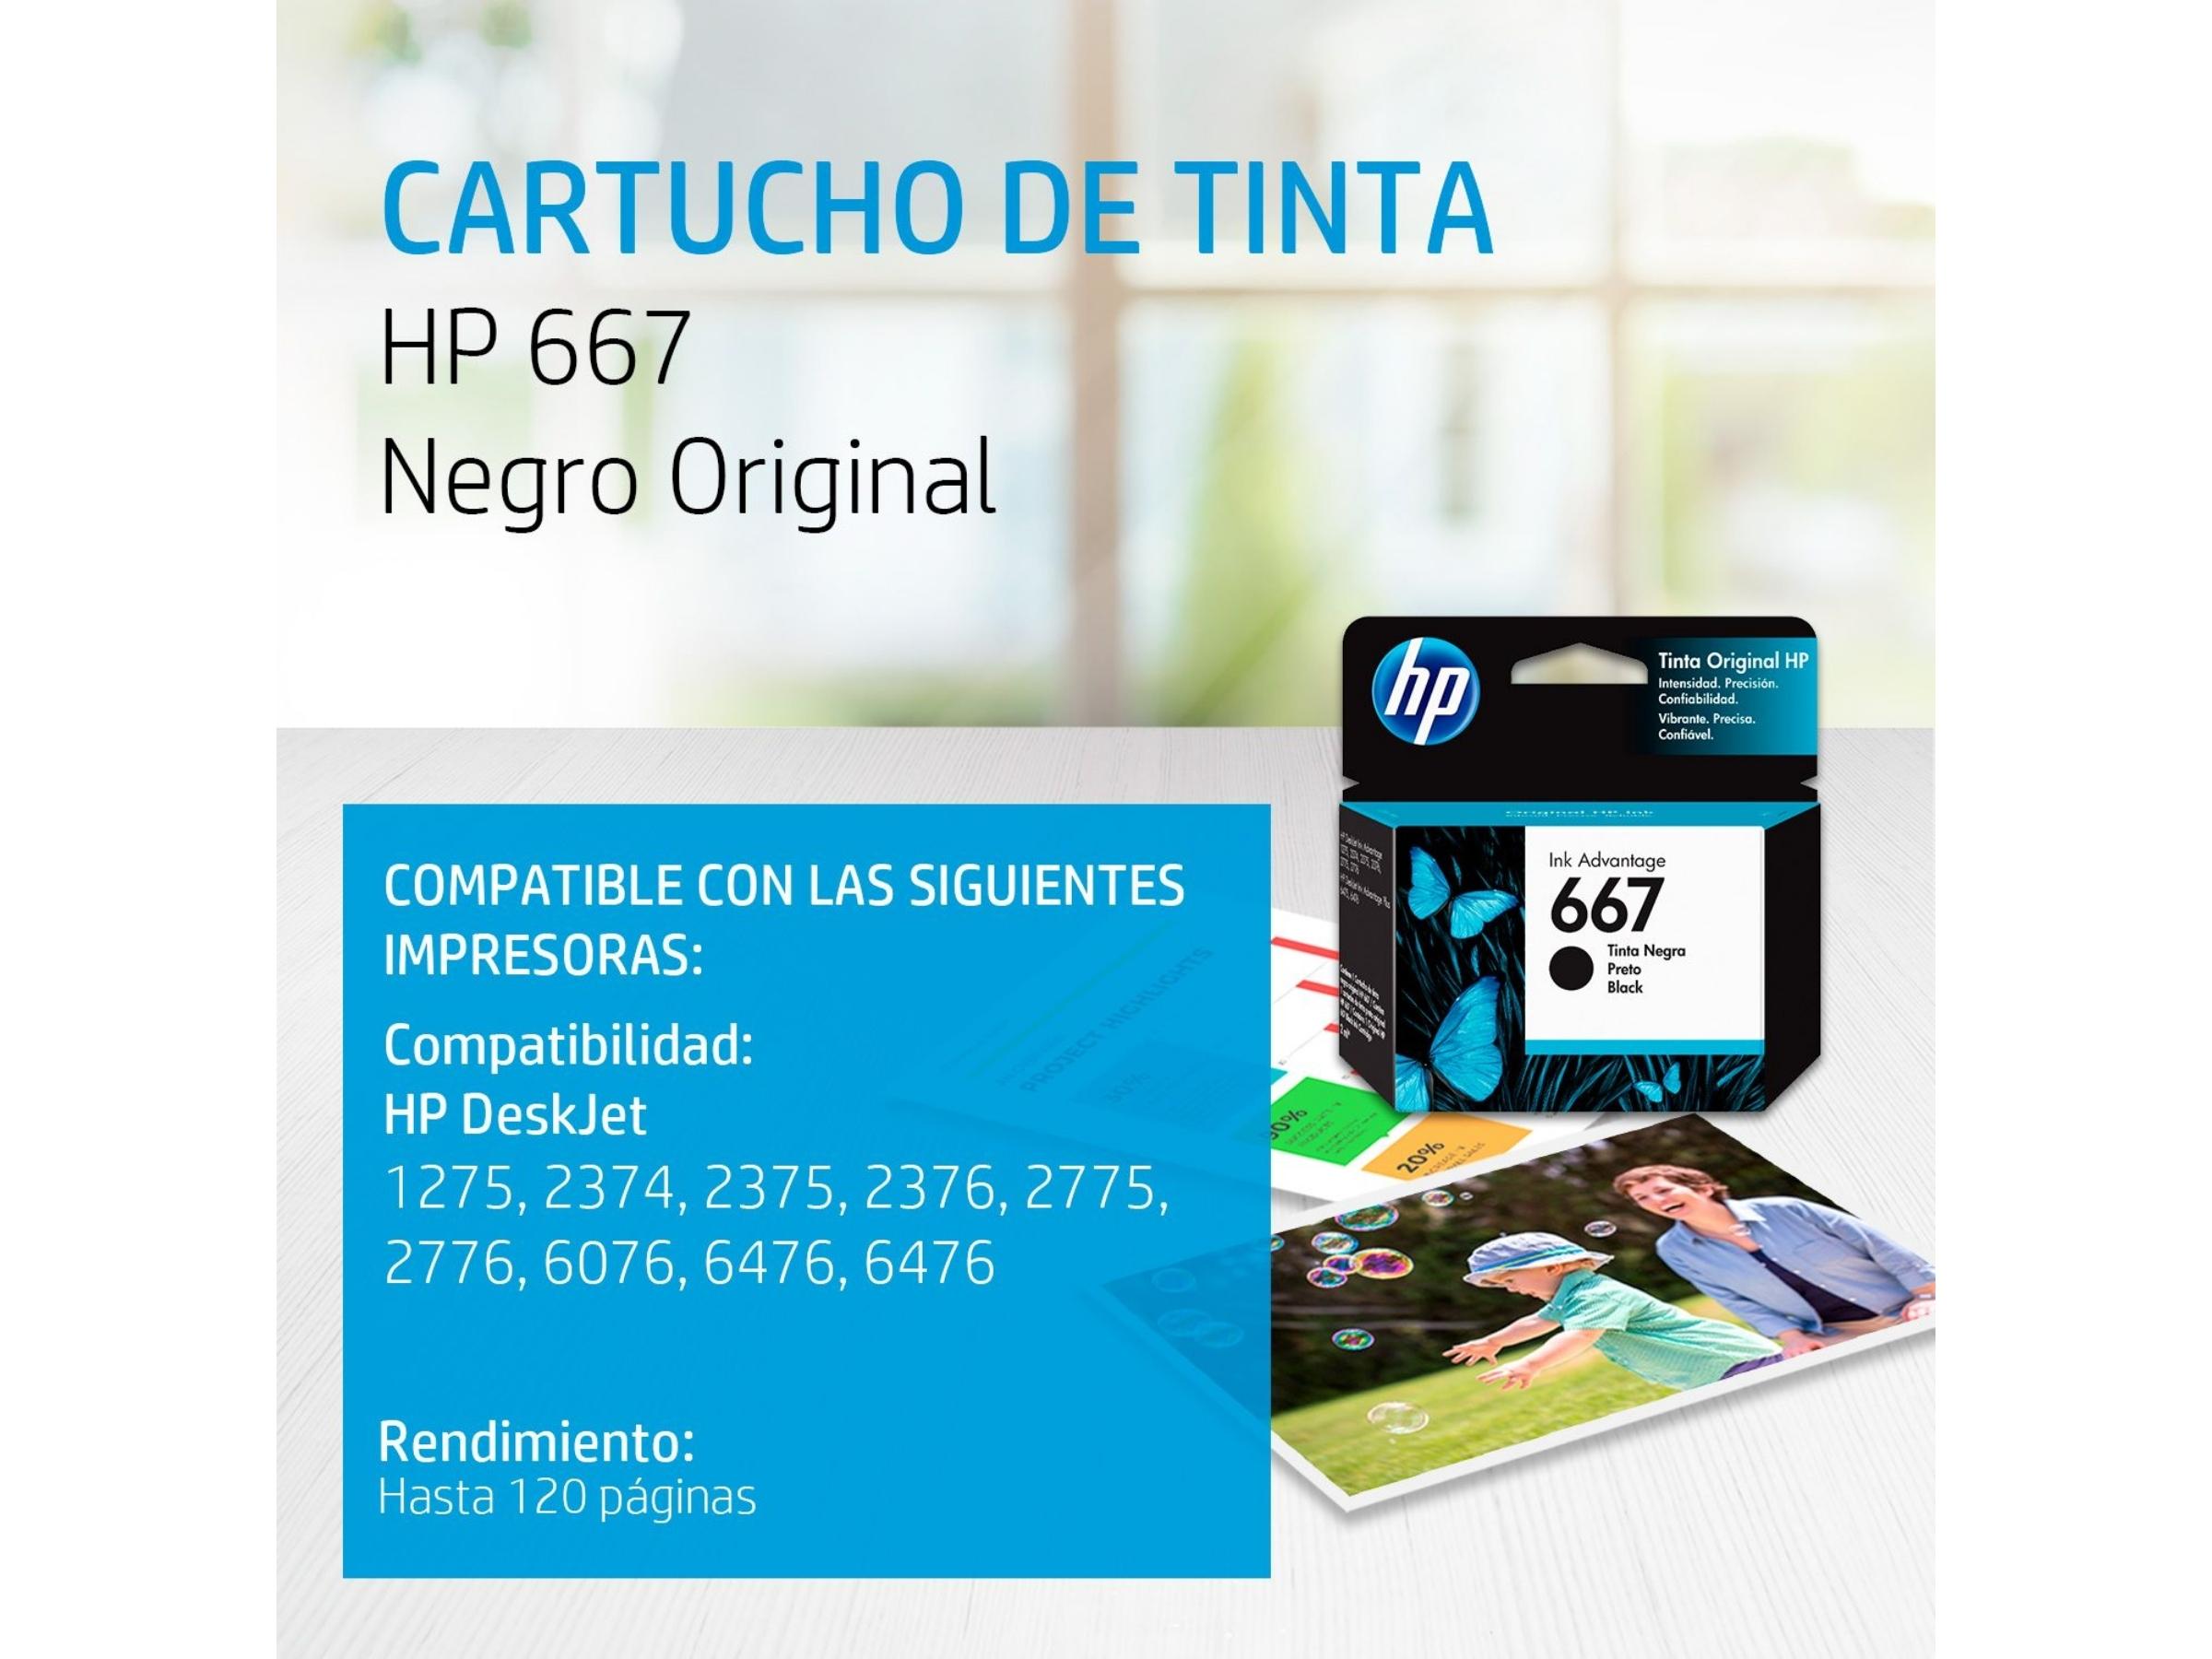 CARTUCHO DE TINTA HP 667 BLACK (3YM79AL) 1275/2374/2375/2376/2775/2776